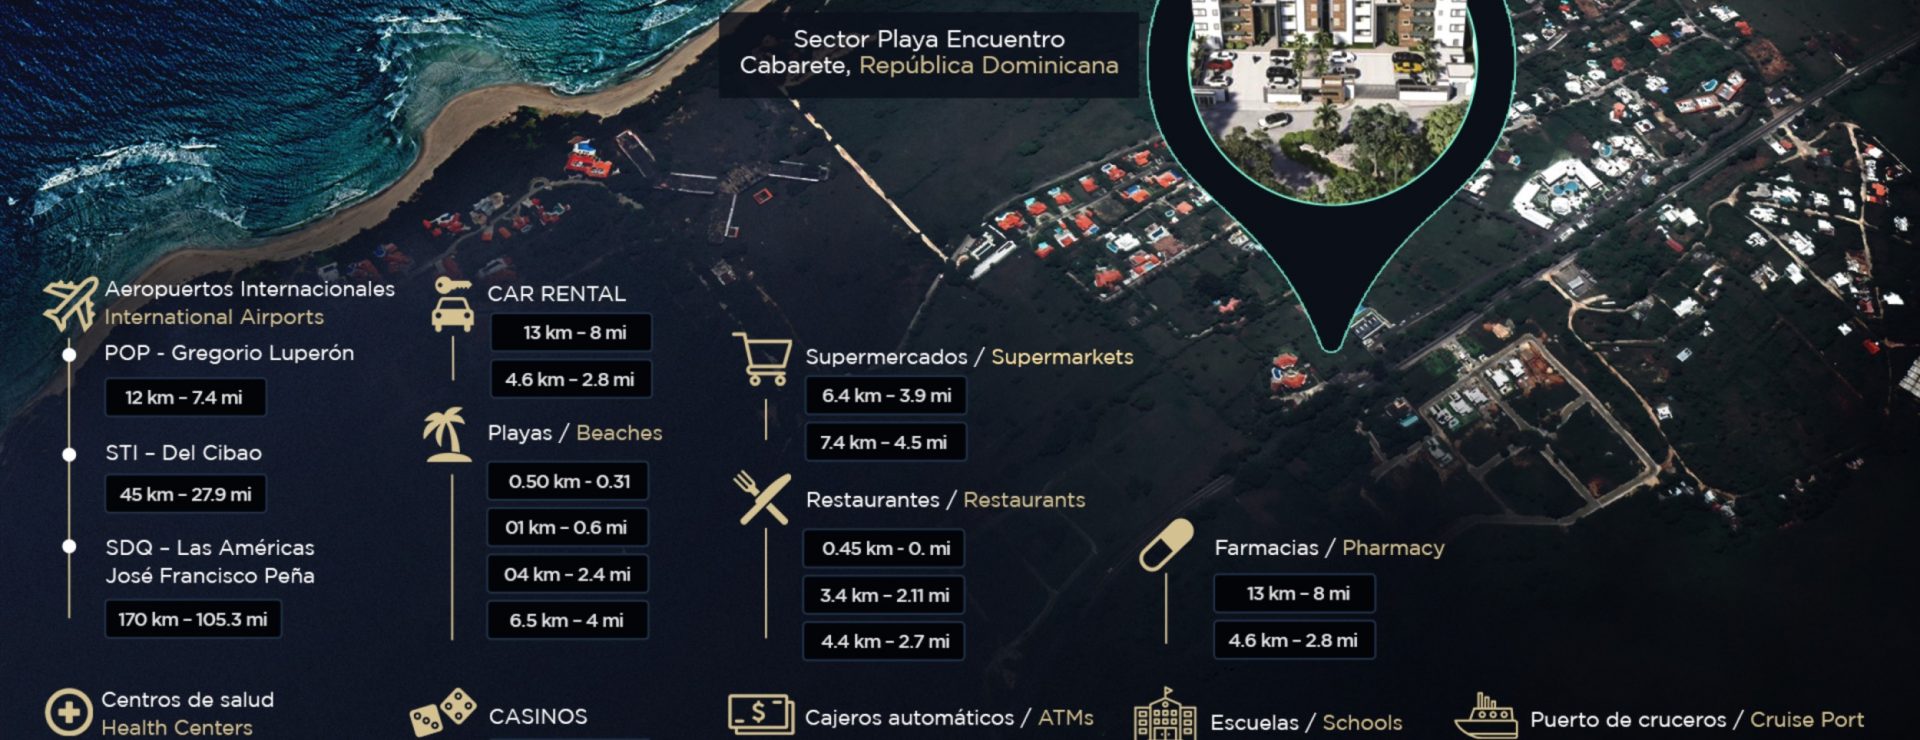 De lujo en Playa Encuentro Cabarete República Dominicana - RD21V000